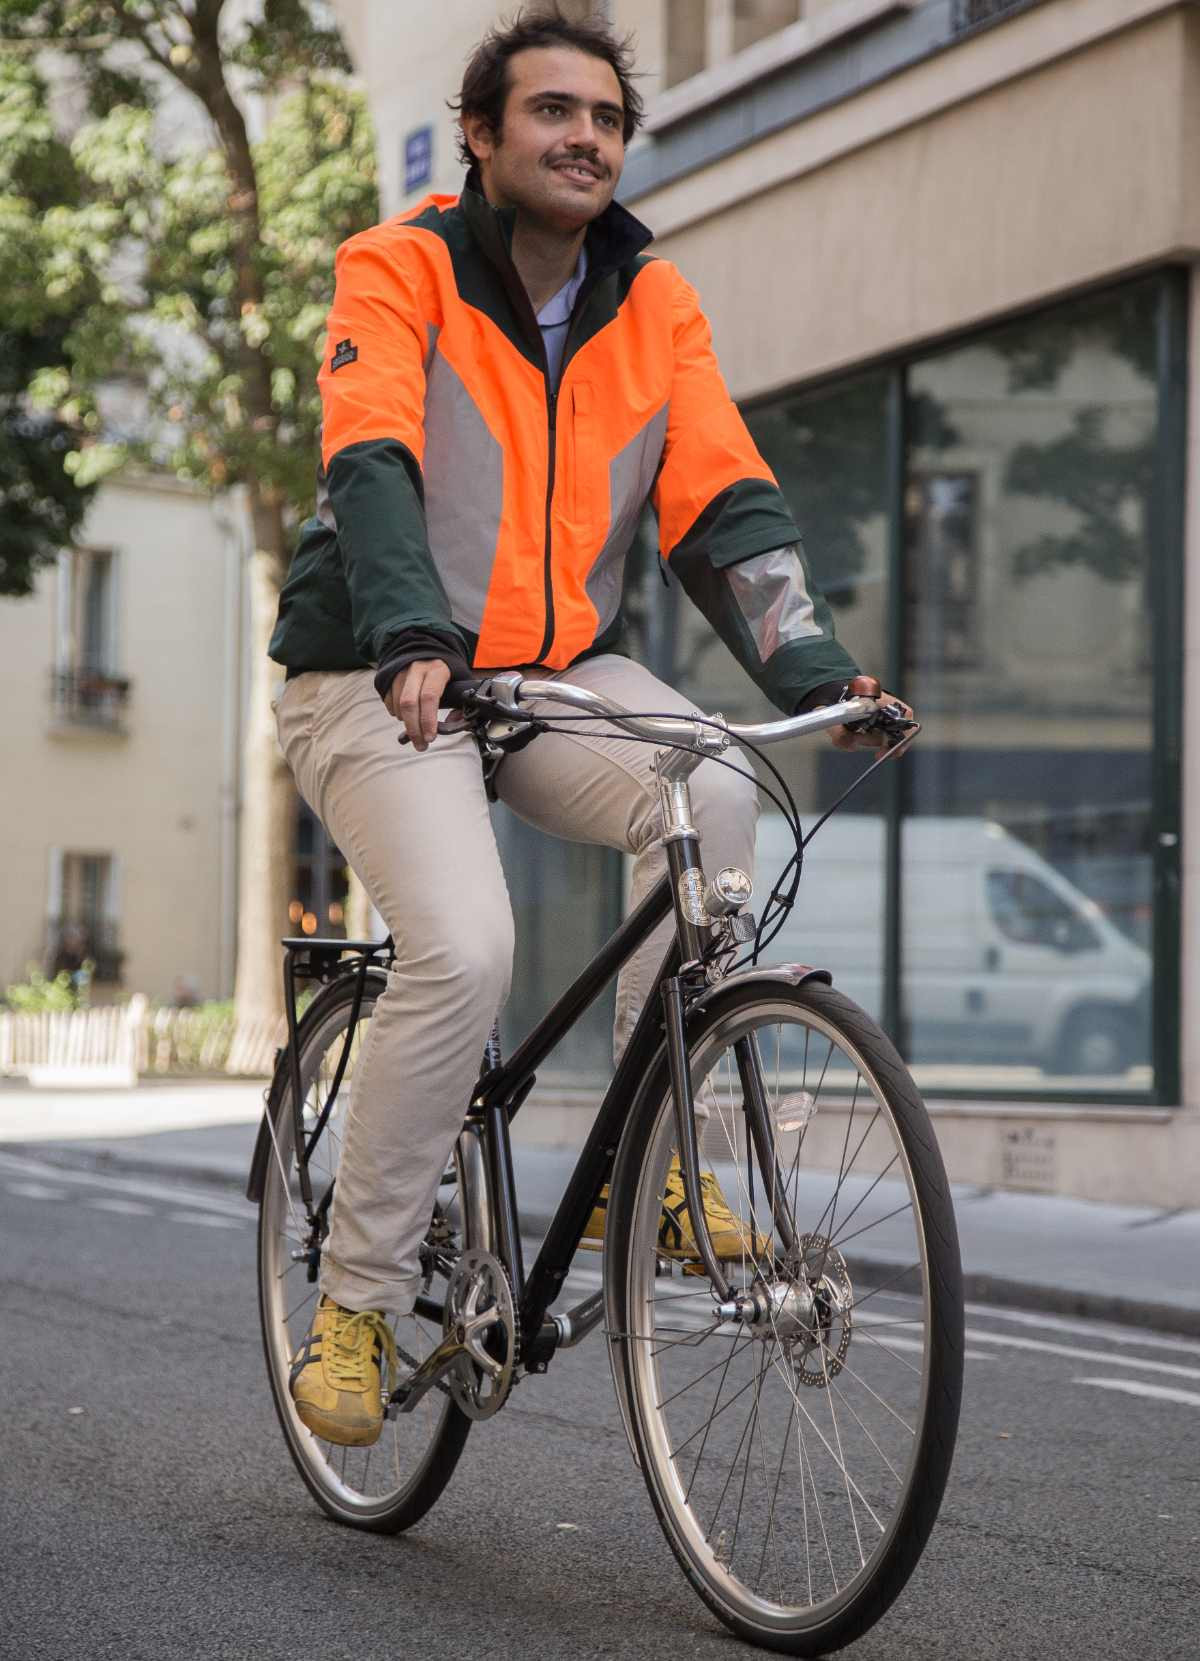 Soit visible à vélo avec des vêtements et composants réfléchissants